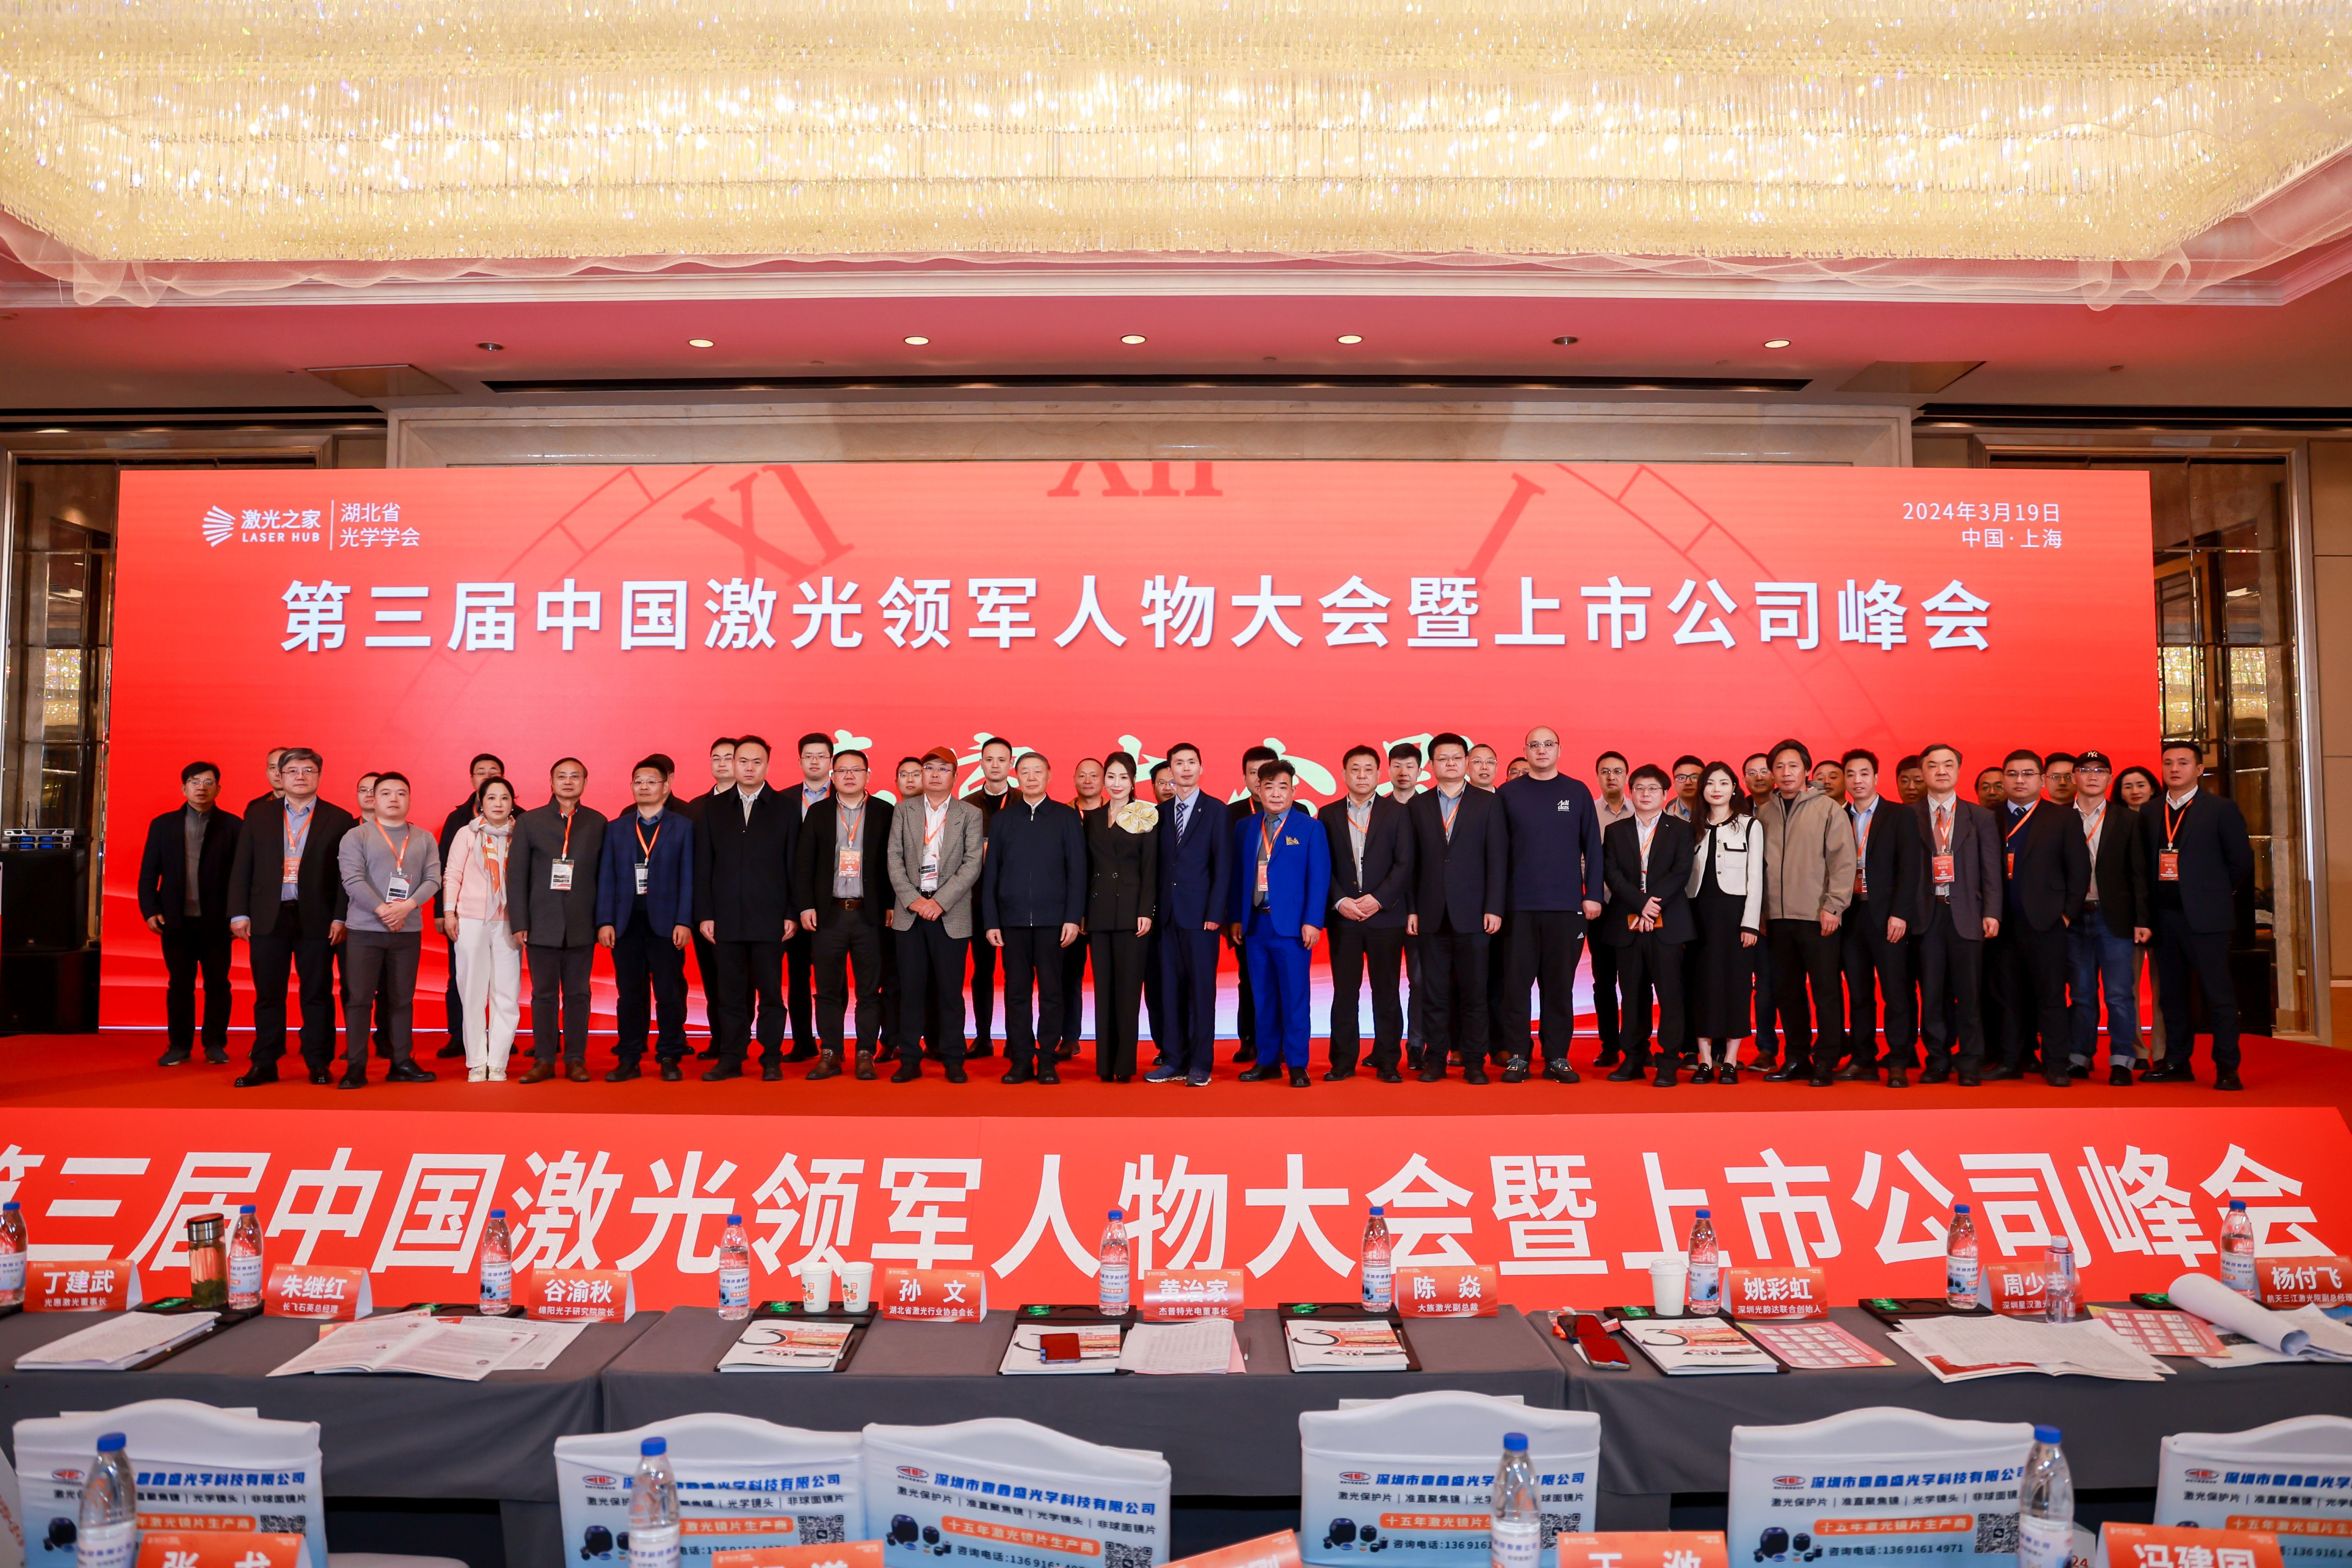 亚美am8ag公司受邀在第三届中国激光领军人物大会暨上市公司峰会上发表主题演讲